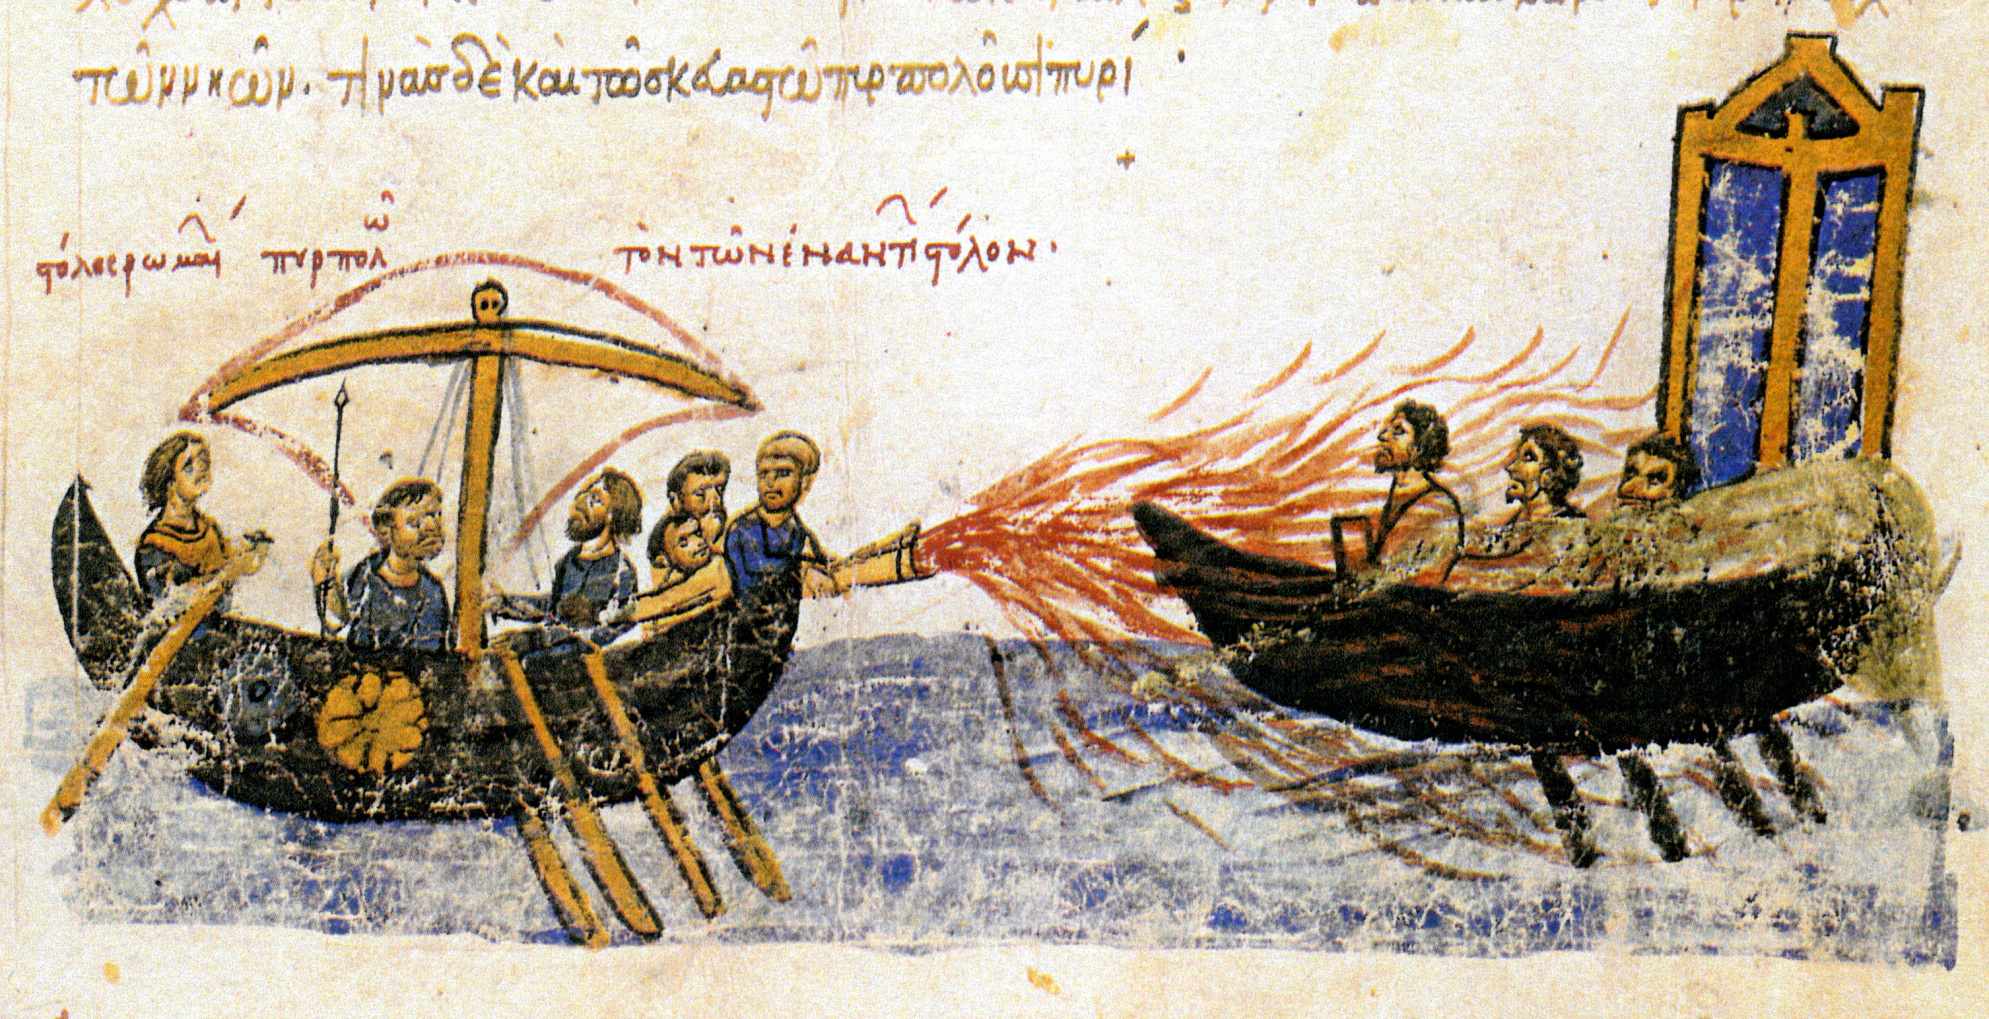 "Die römische Flotte brennt die gegnerische Flotte nieder" - Ein byzantinisches Schiff mit griechischem Feuer gegen ein Schiff des Rebellen Thomas des Slawen, 821. Illustration aus dem 12. Jahrhundert aus den Madrider Skylitzen.